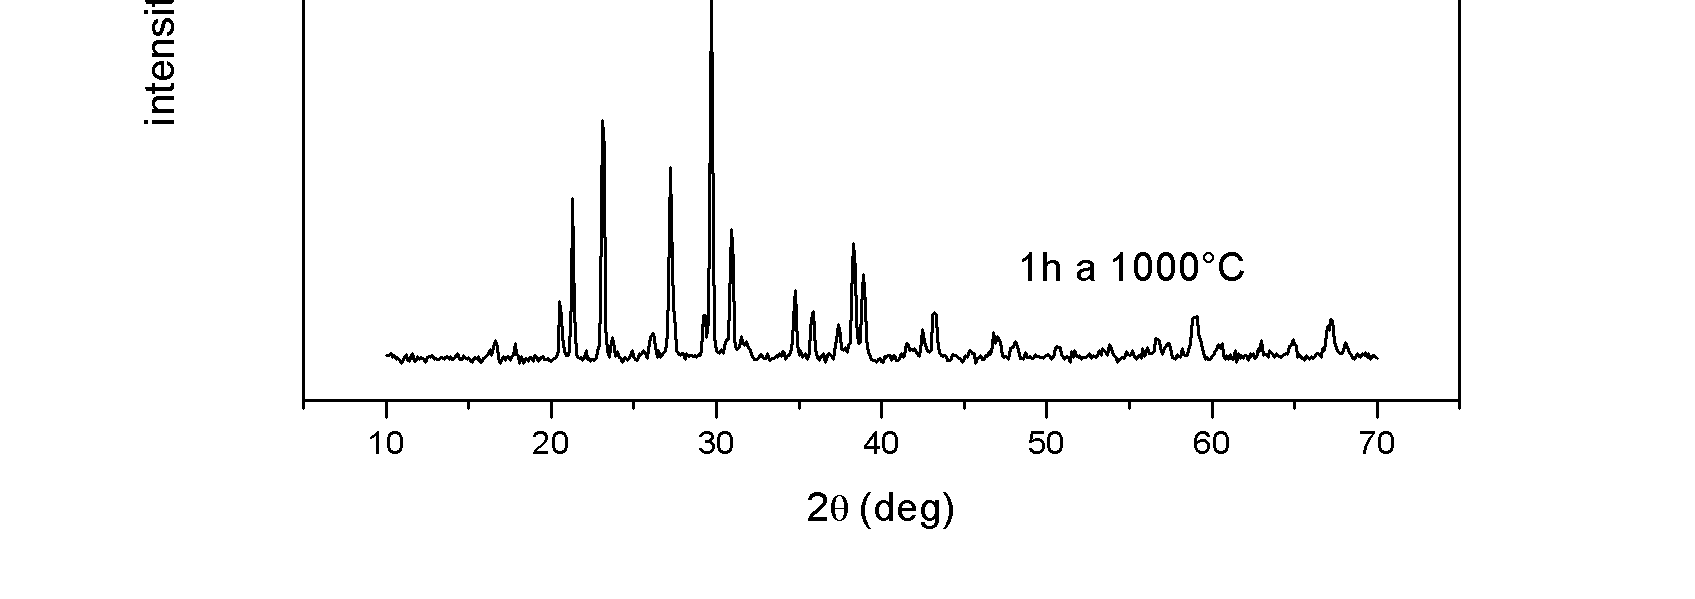 Sintercristallizzazione e tempra chimica di vetroceramiche a base di nefelina 67 In figura 3.24 vengono messi a confronto gli spettri ottenuti con il trattamento termico di una e di due ore.